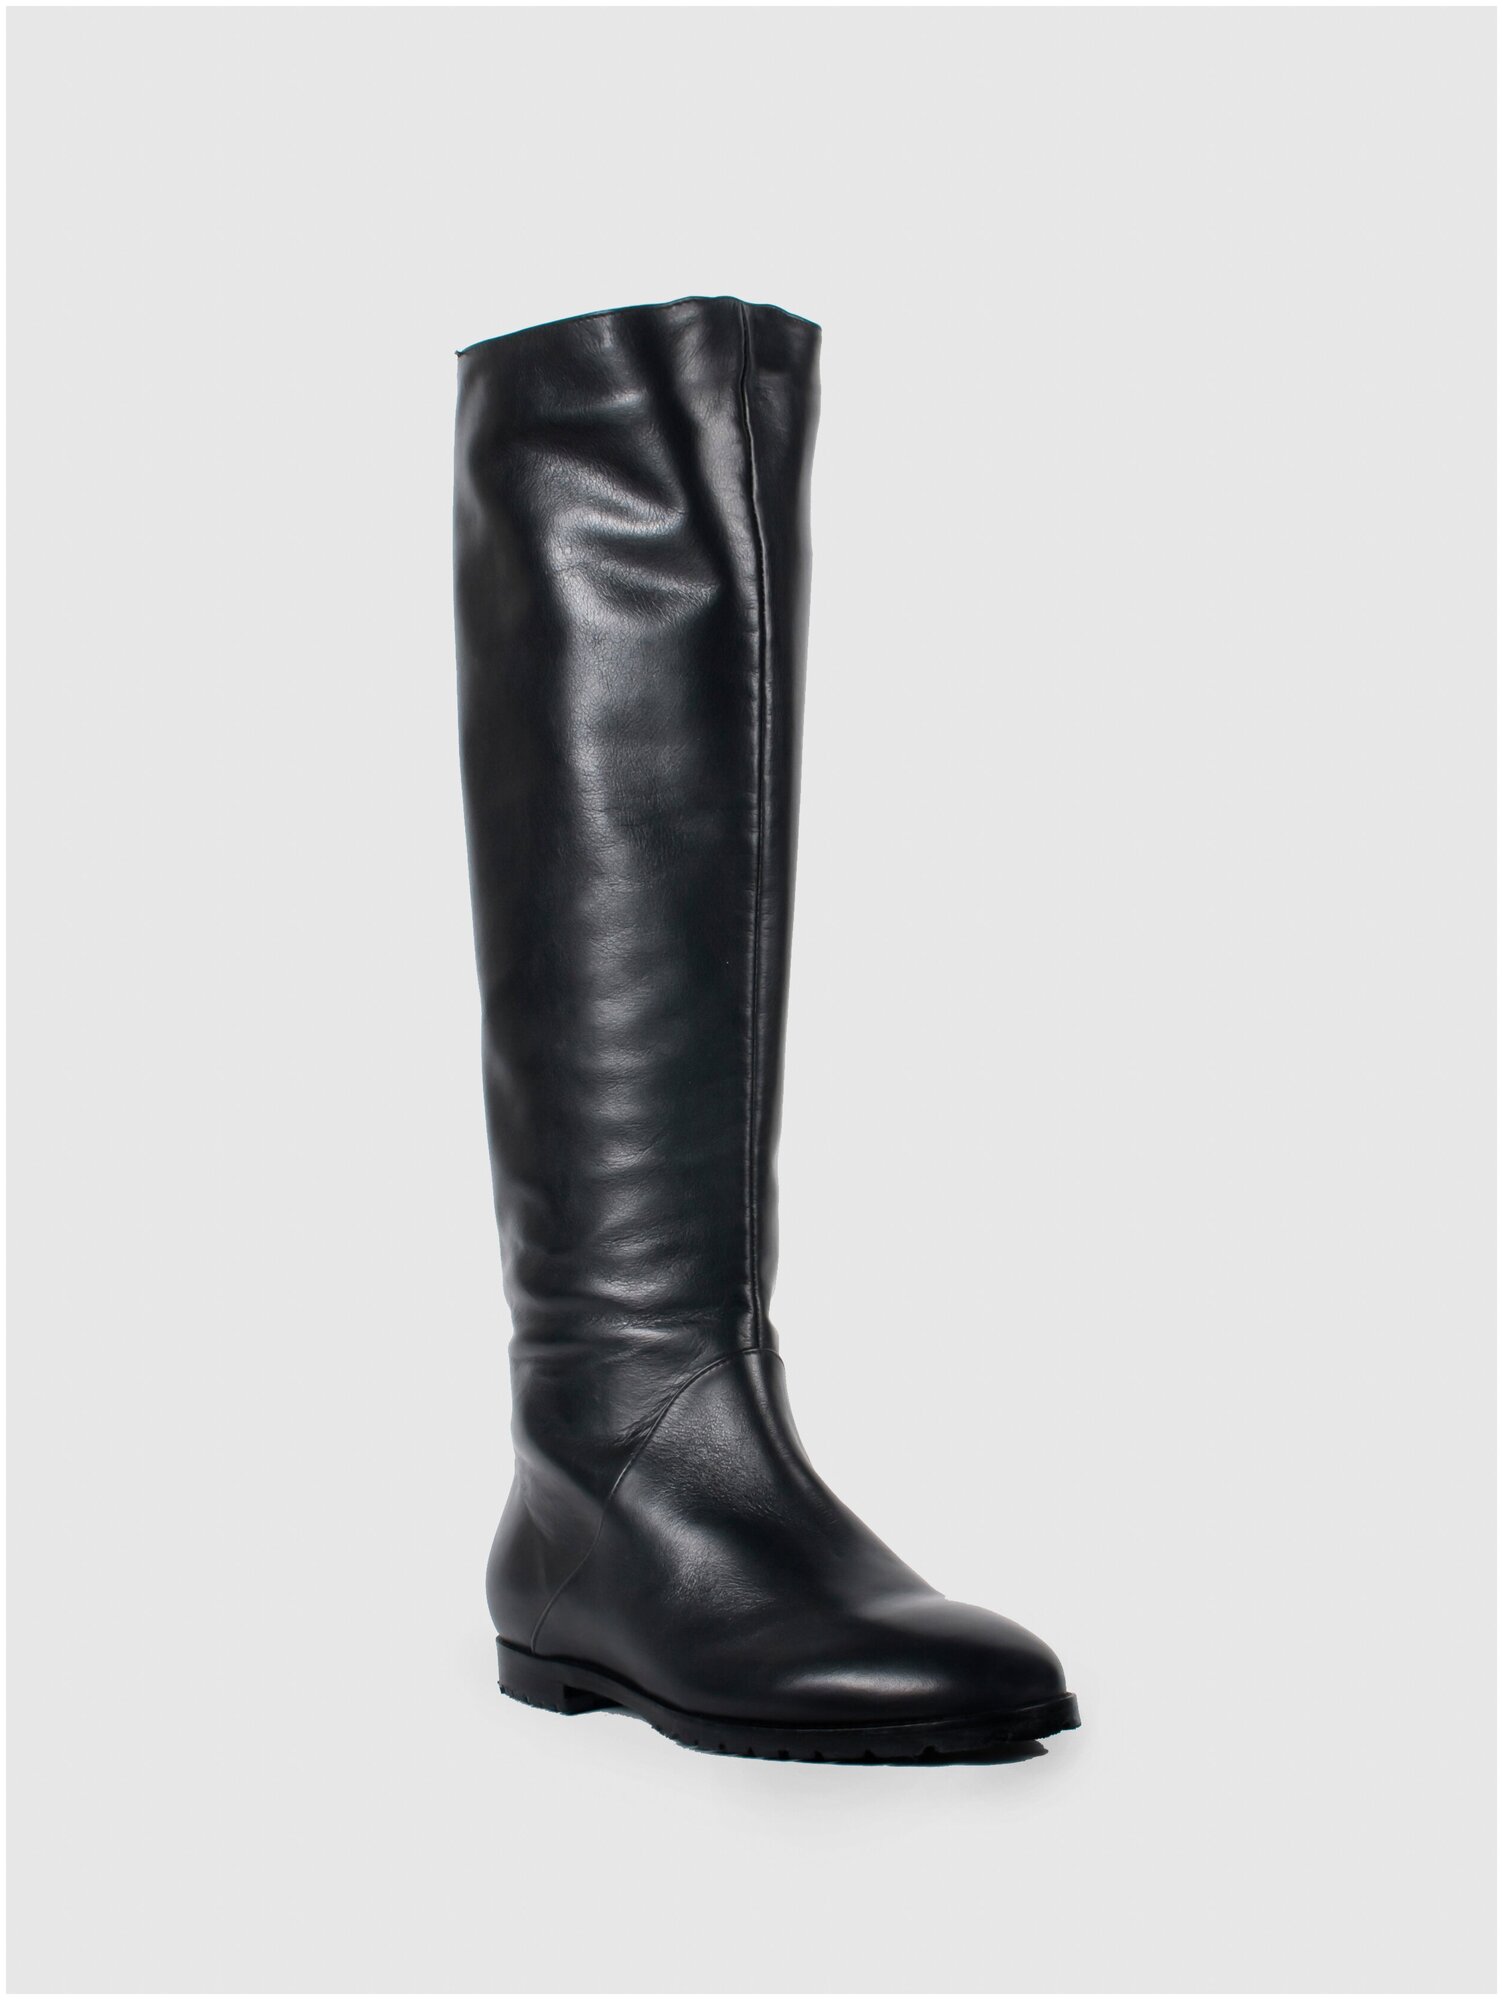 Женская обувь E-SKYE  сапоги модель Трубы натуральная кожа  цвет черный